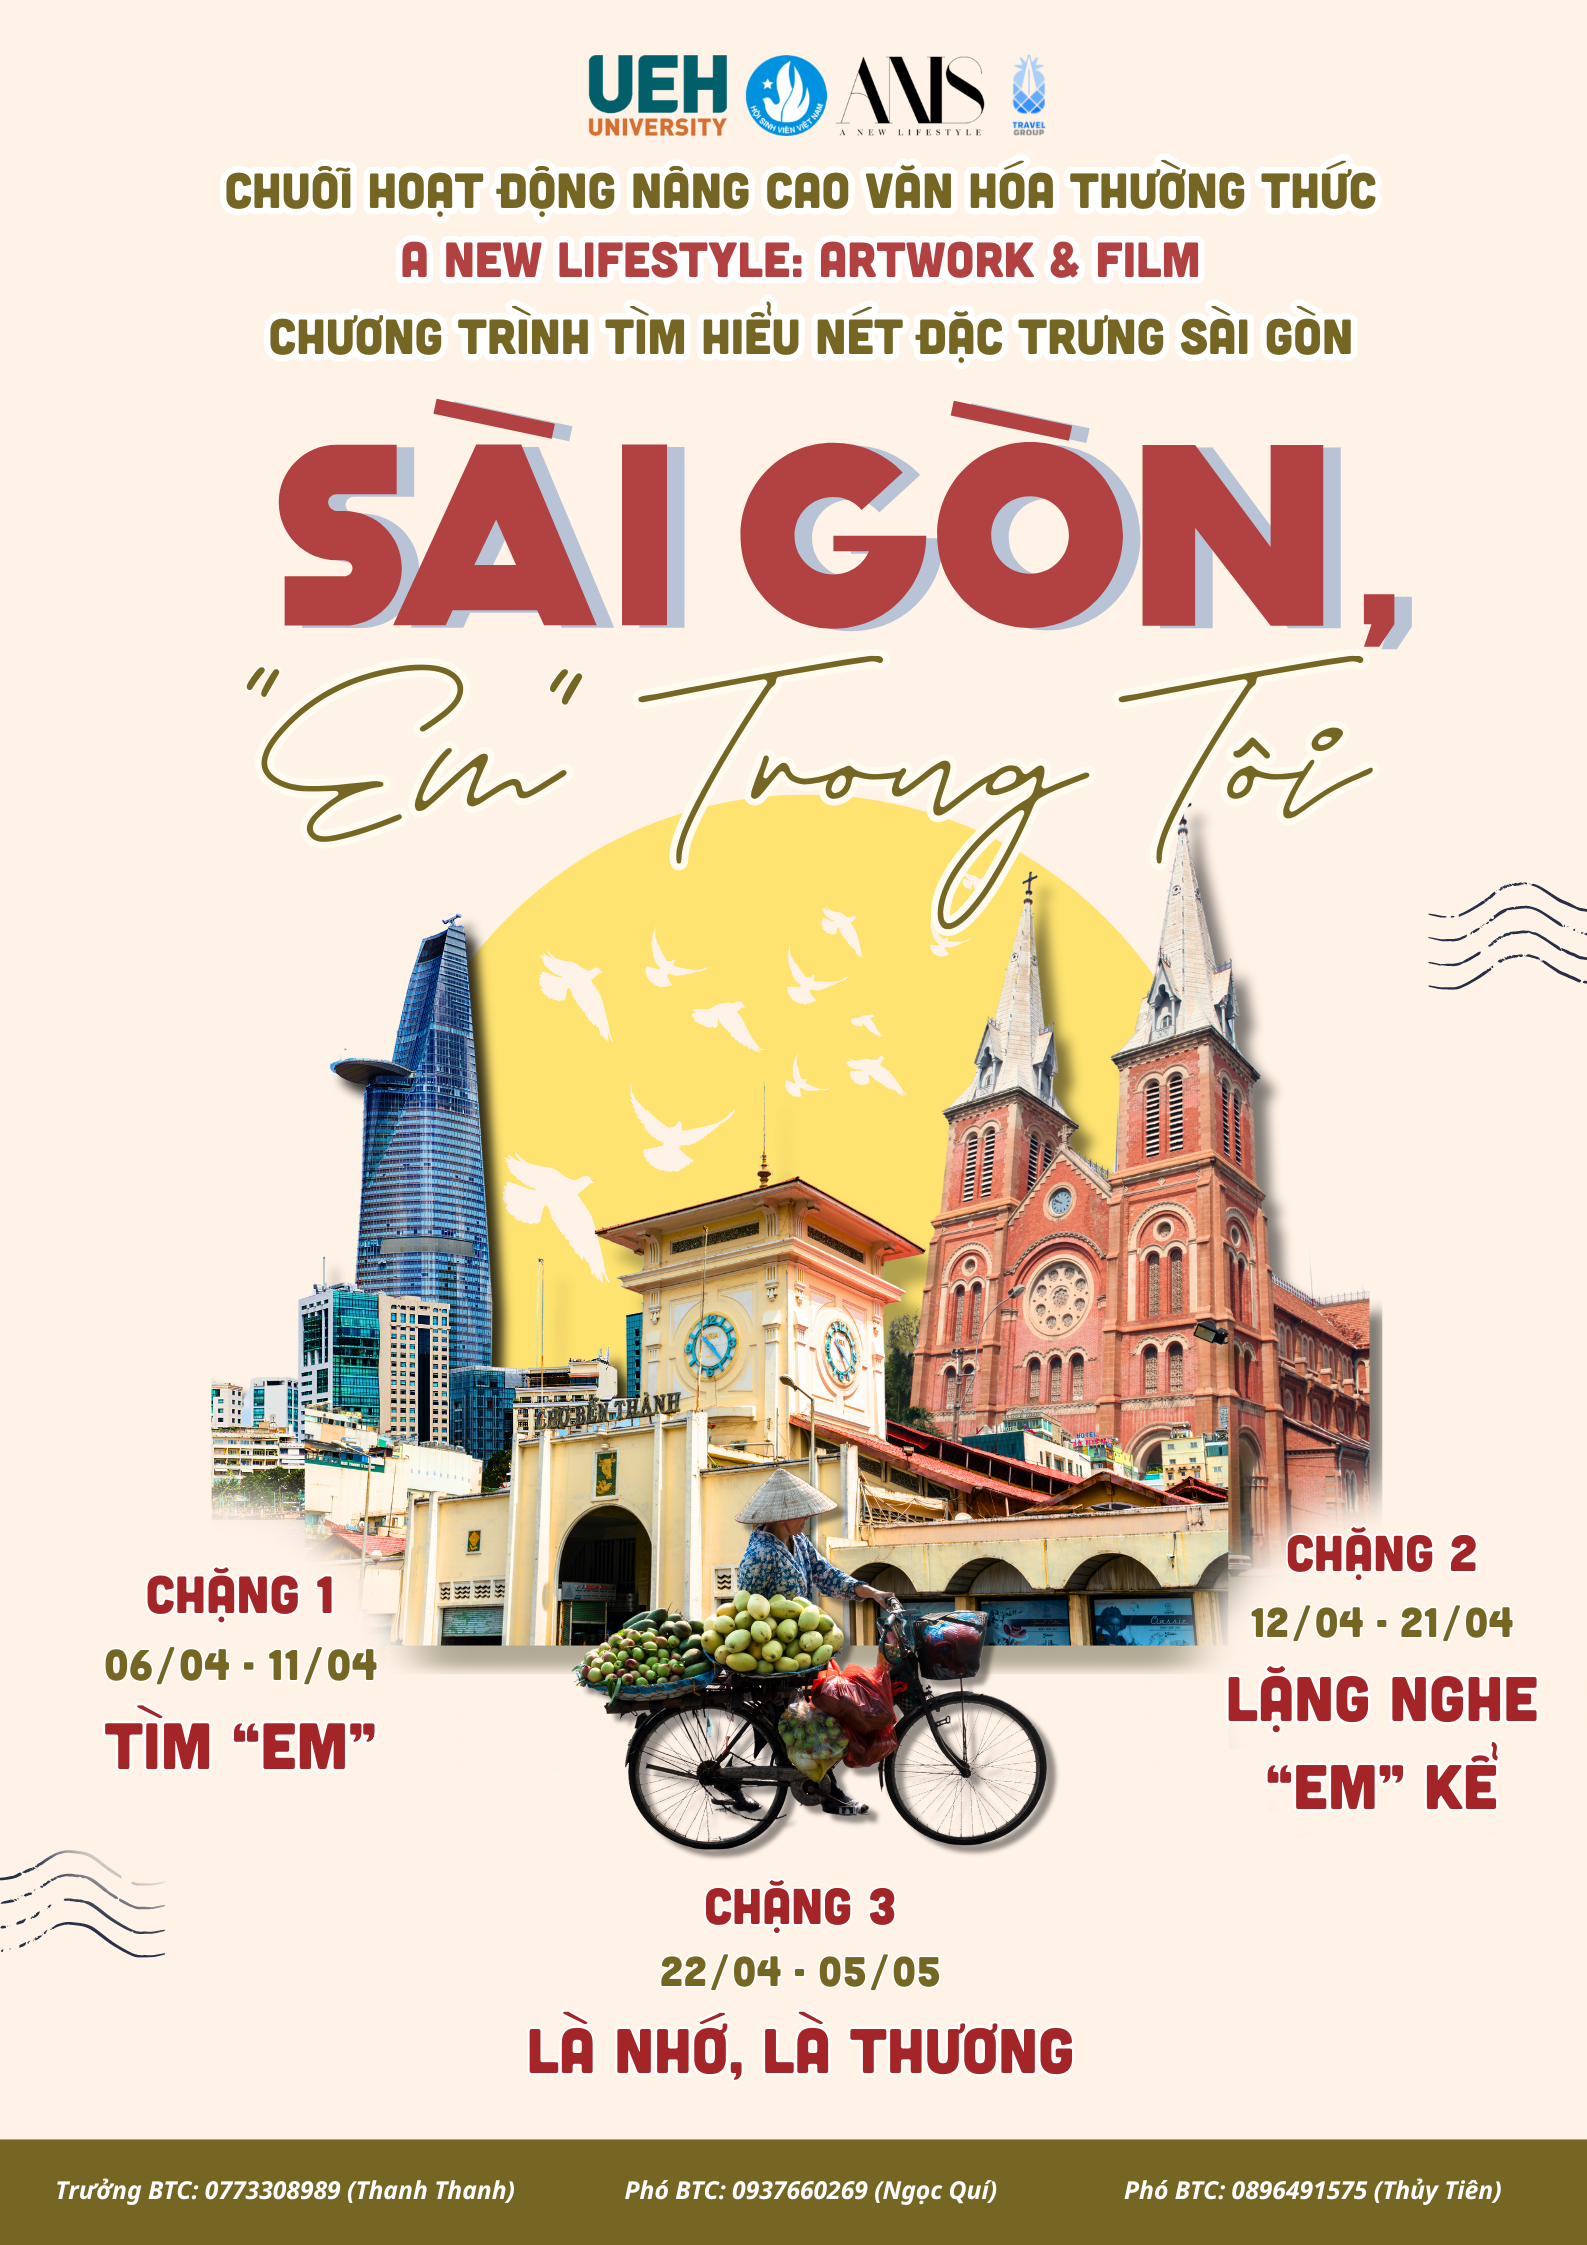 Chuỗi hoạt động nâng cao Văn hóa thường thức - A New Lifestyle  Chương trình Tìm hiểu Nét đặc trưng Sài Gòn Travelgroup UEH: Sài Gòn, “Em” trong tôi